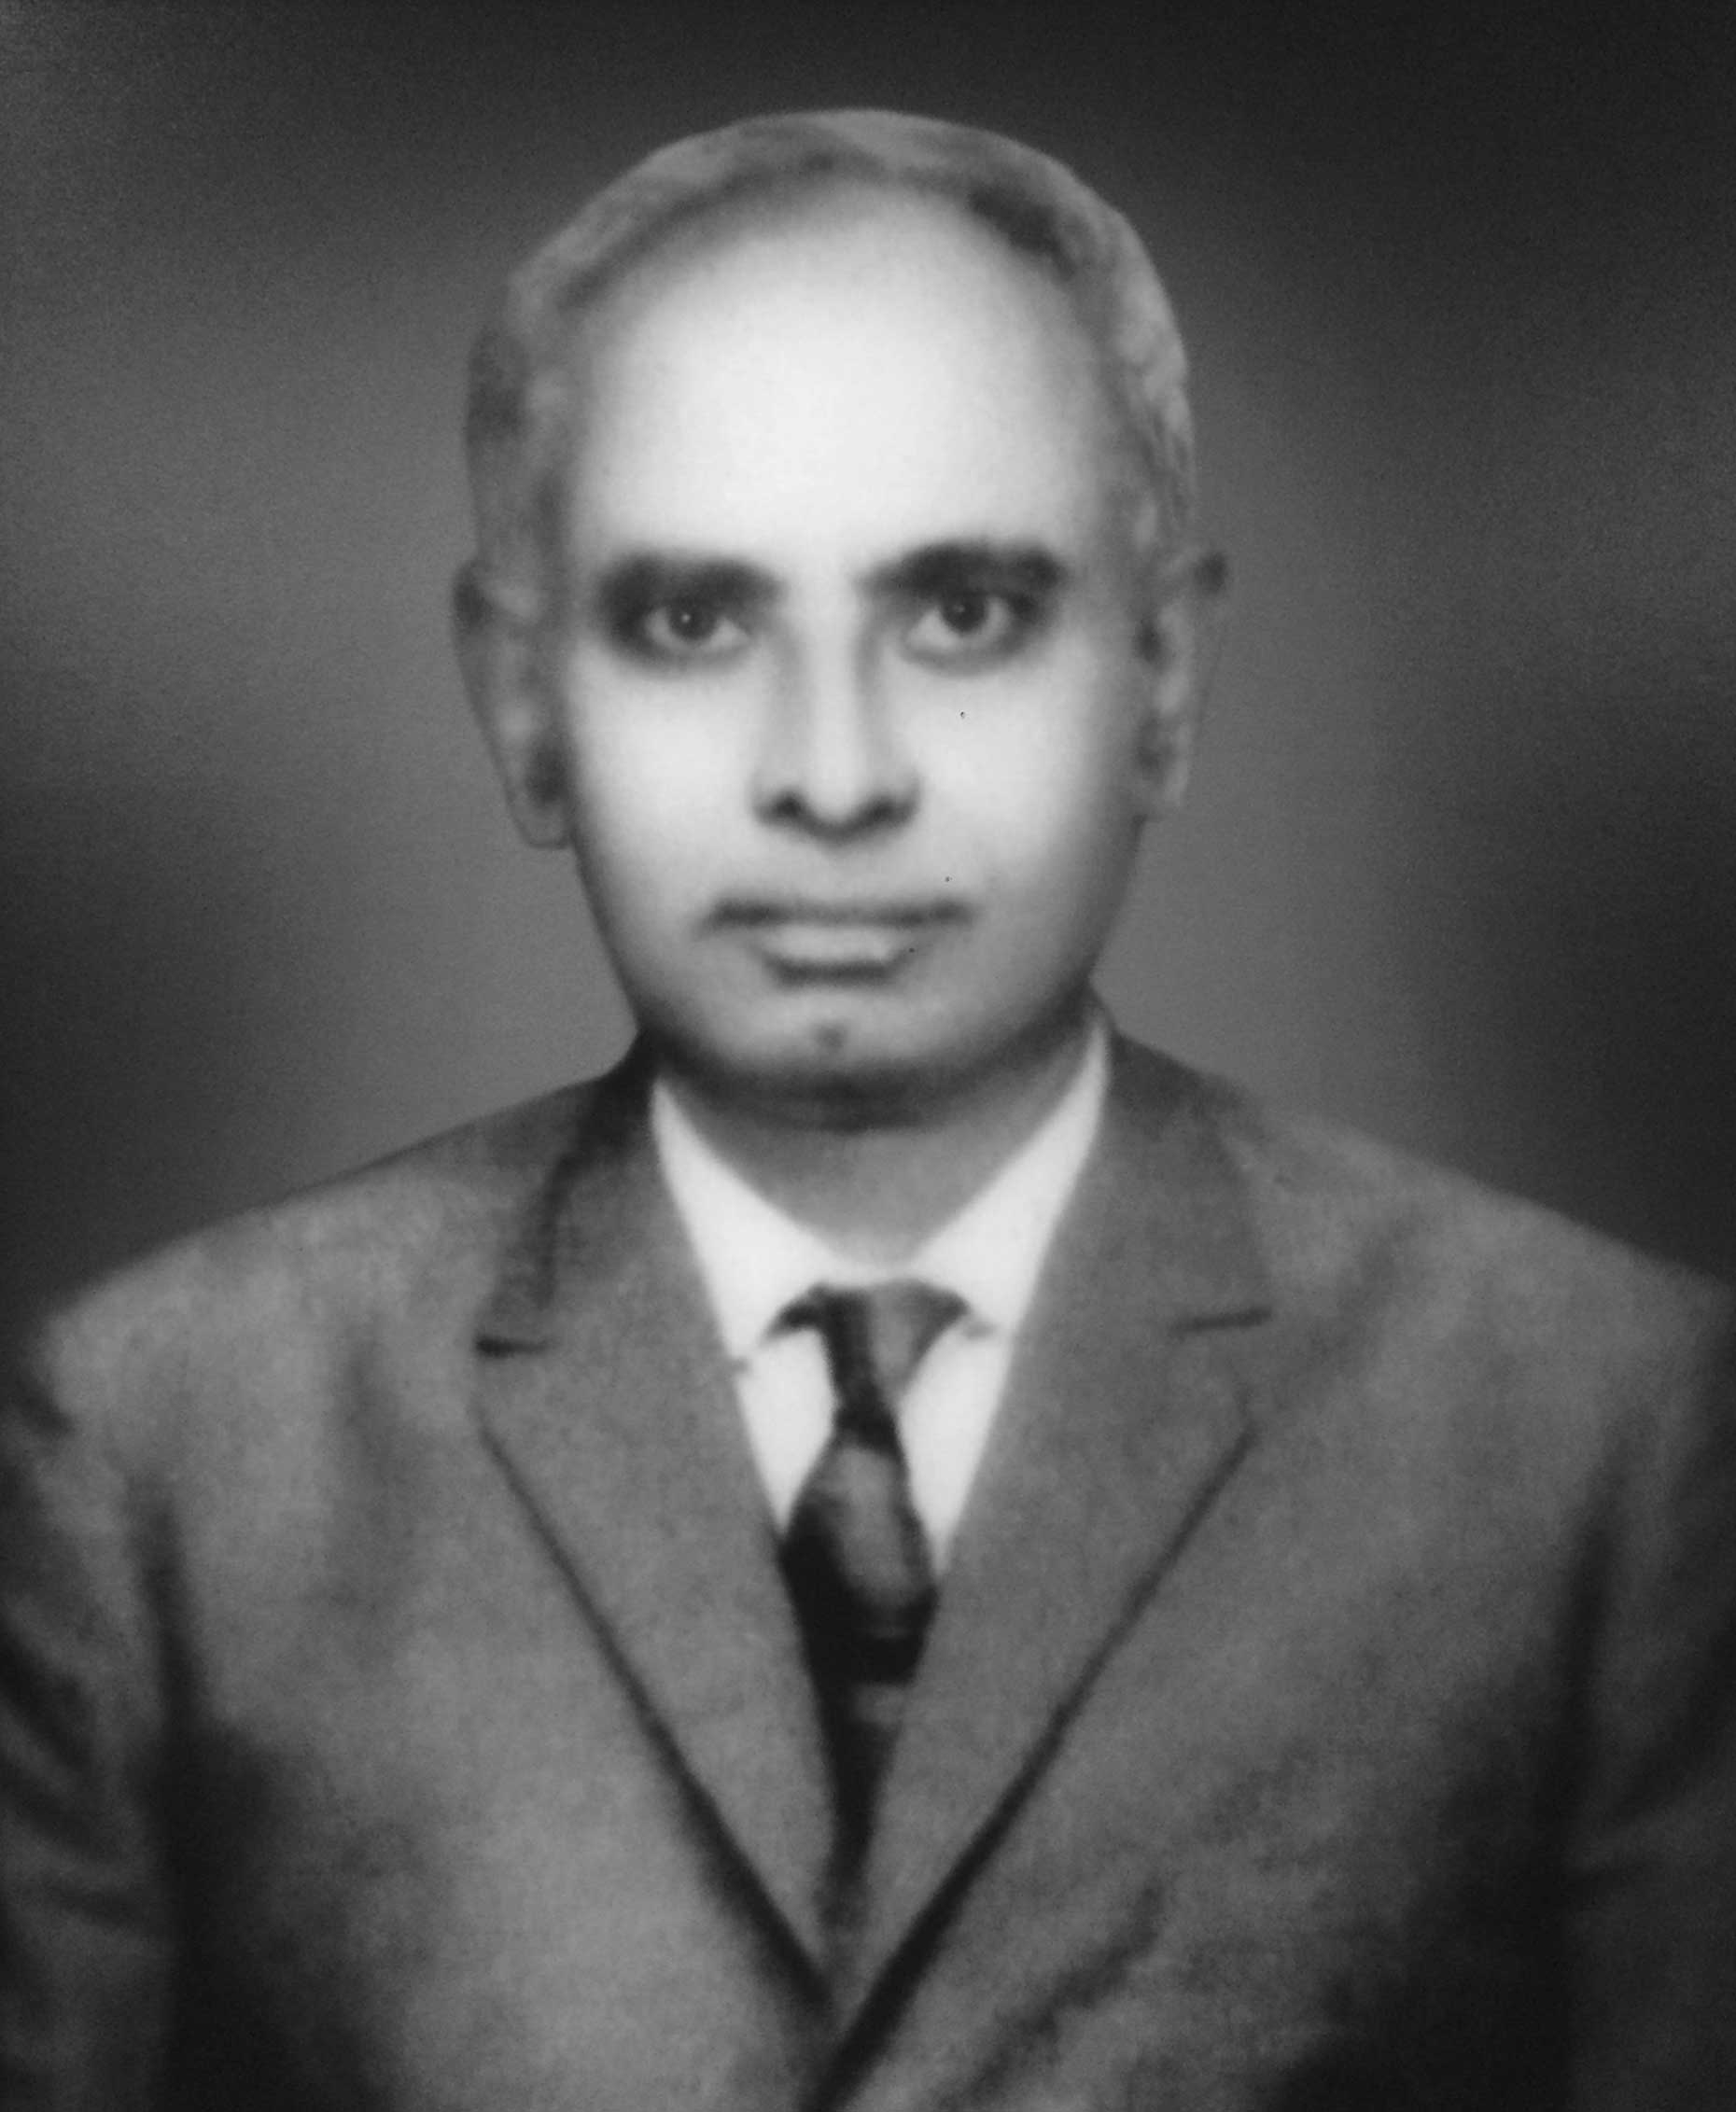 Mr. Talib Ali Shah (Late)